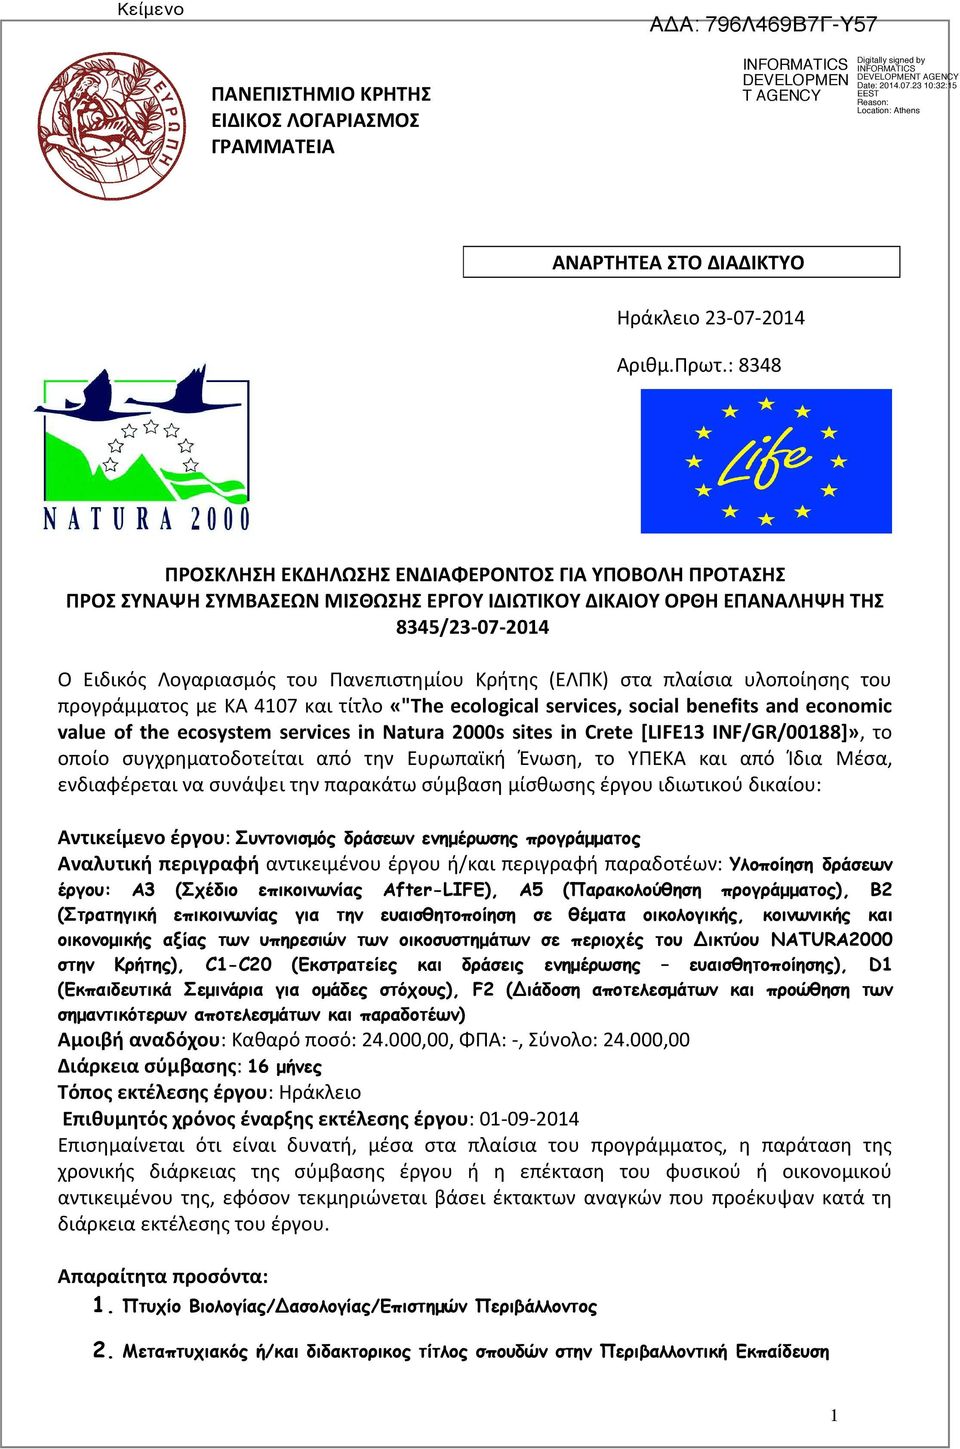 (ΕΛΠΚ) στα πλαίσια υλοποίησης του προγράμματος με ΚΑ 4107 και τίτλο «"The ecological services, social benefits and economic value of the ecosystem services in Natura 2000s sites in Crete [LIFE13